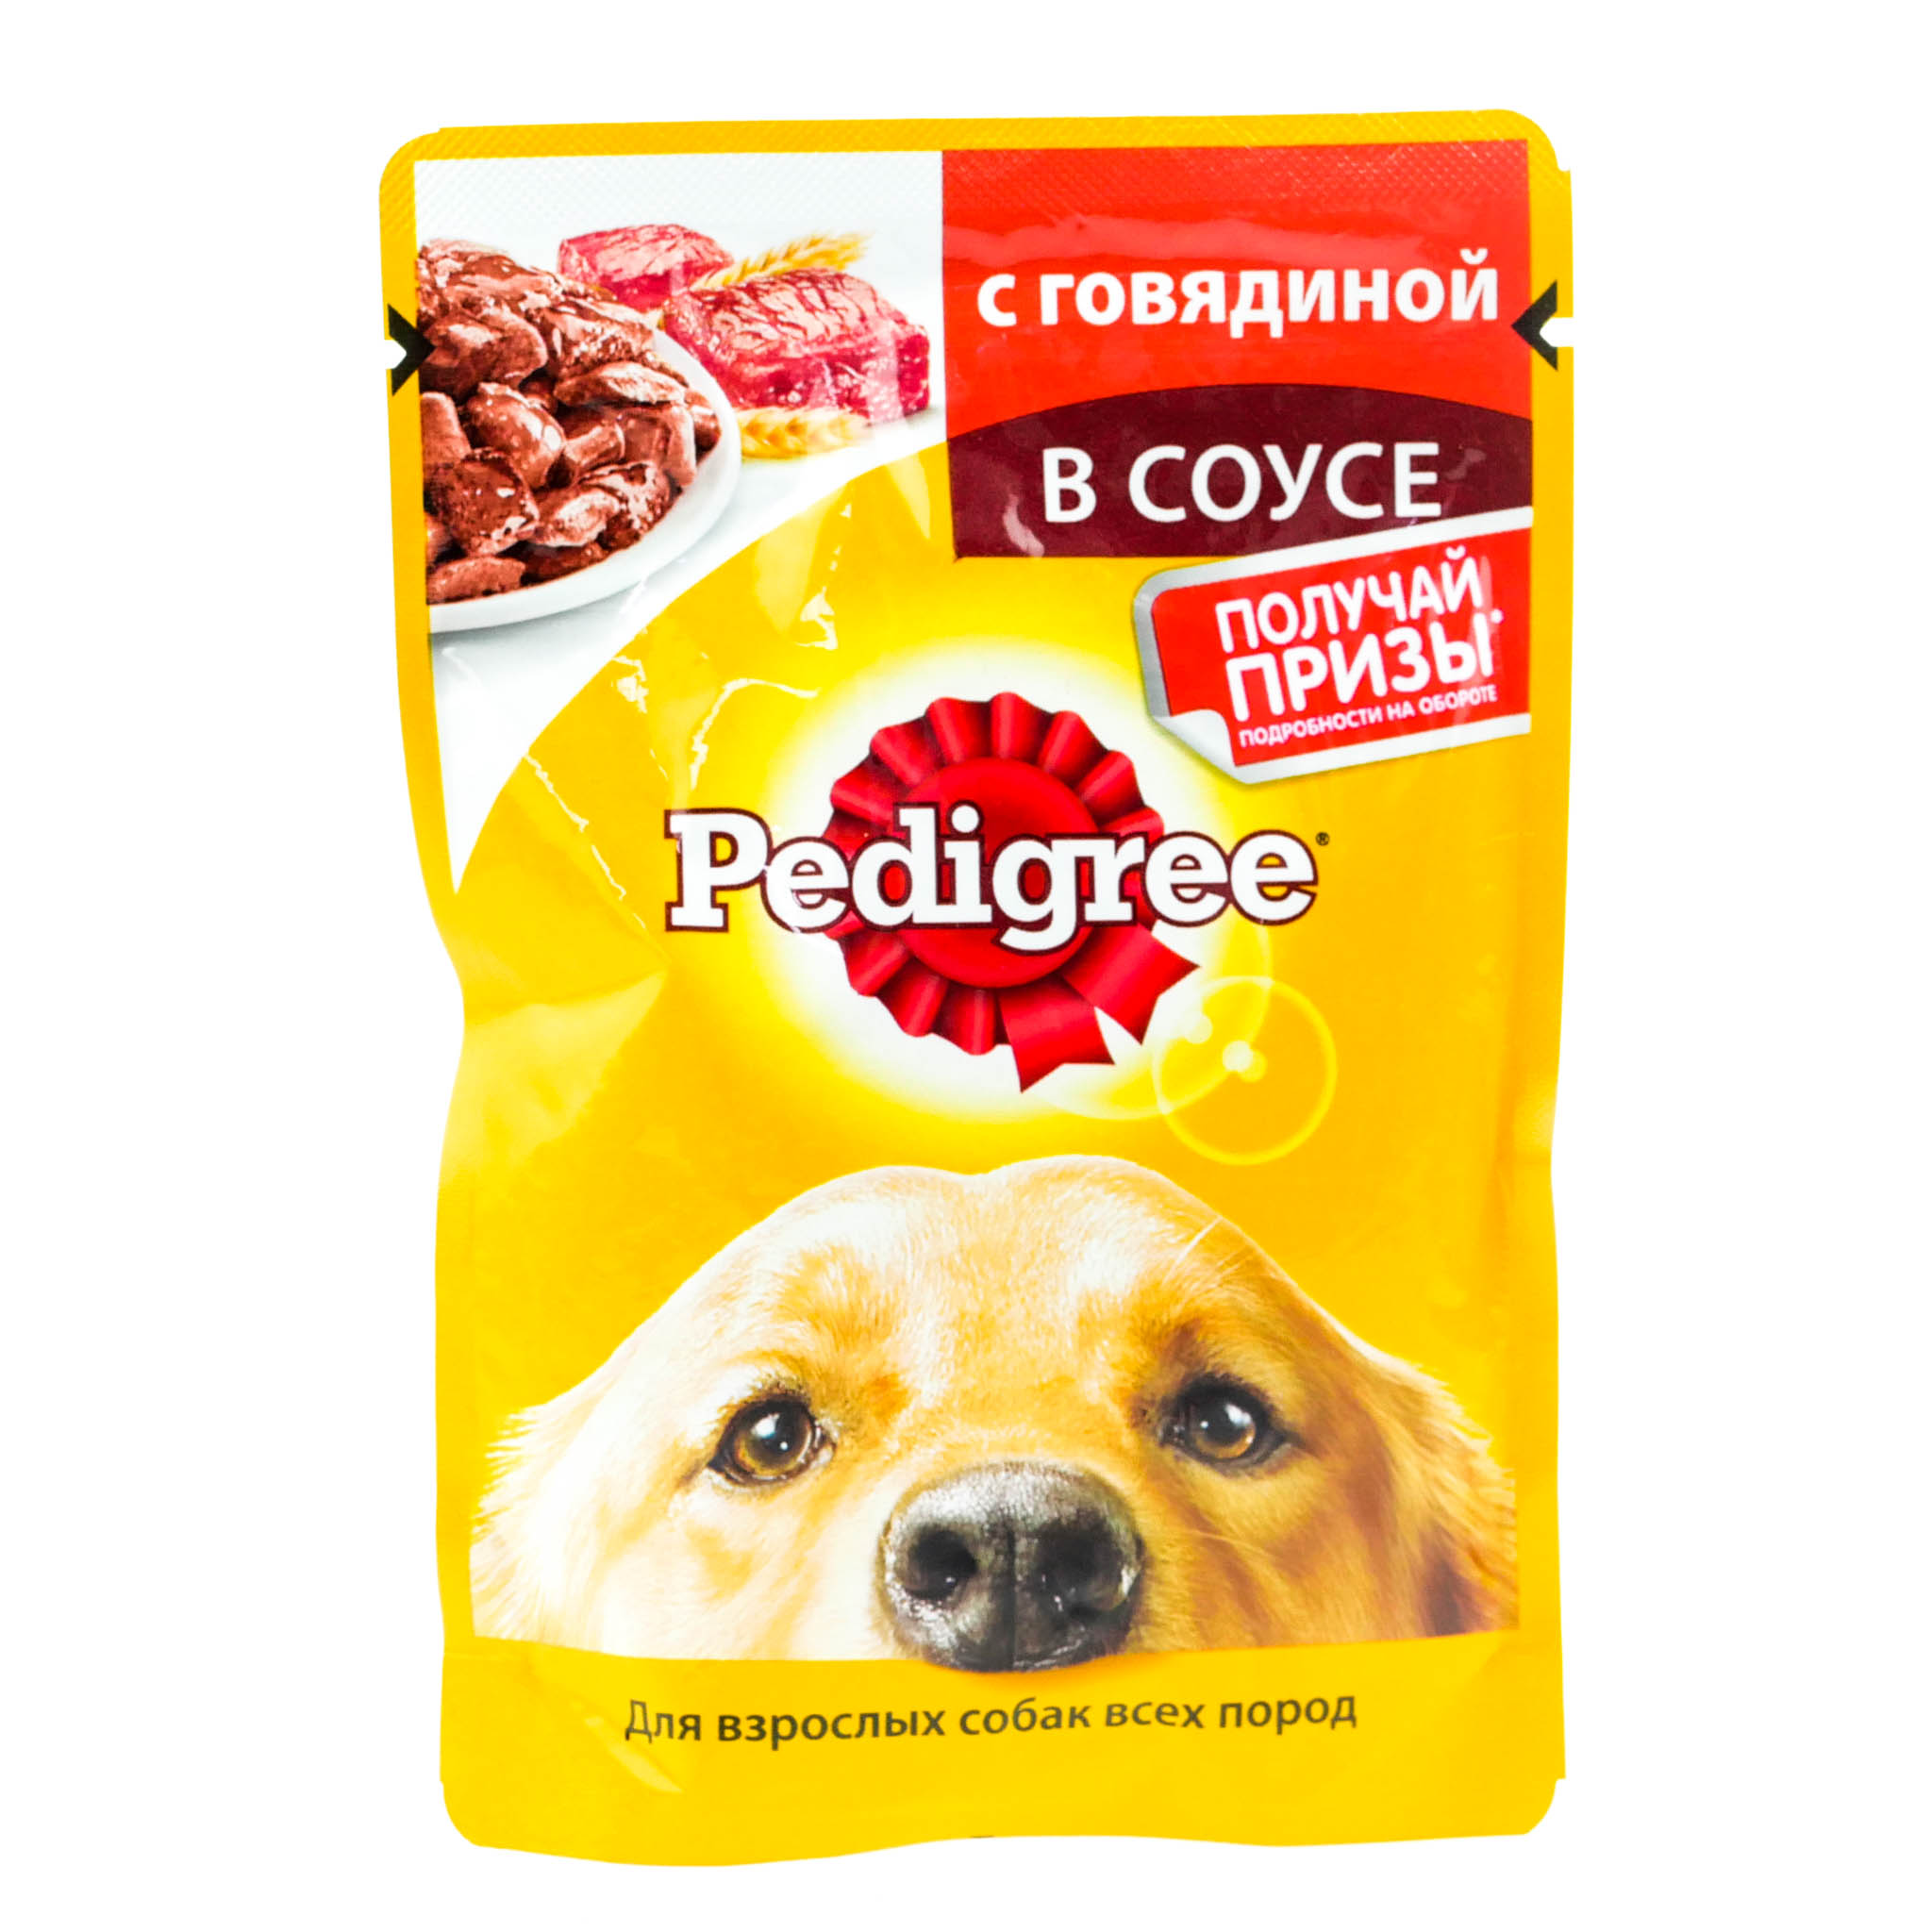 Корм для собак в соусе. Собачий корм Педигри. Pedigree Pal корм для собак. Pedigree для собак 85. Pedigree пауч д/соб мини пород ягненок/овощи соус.